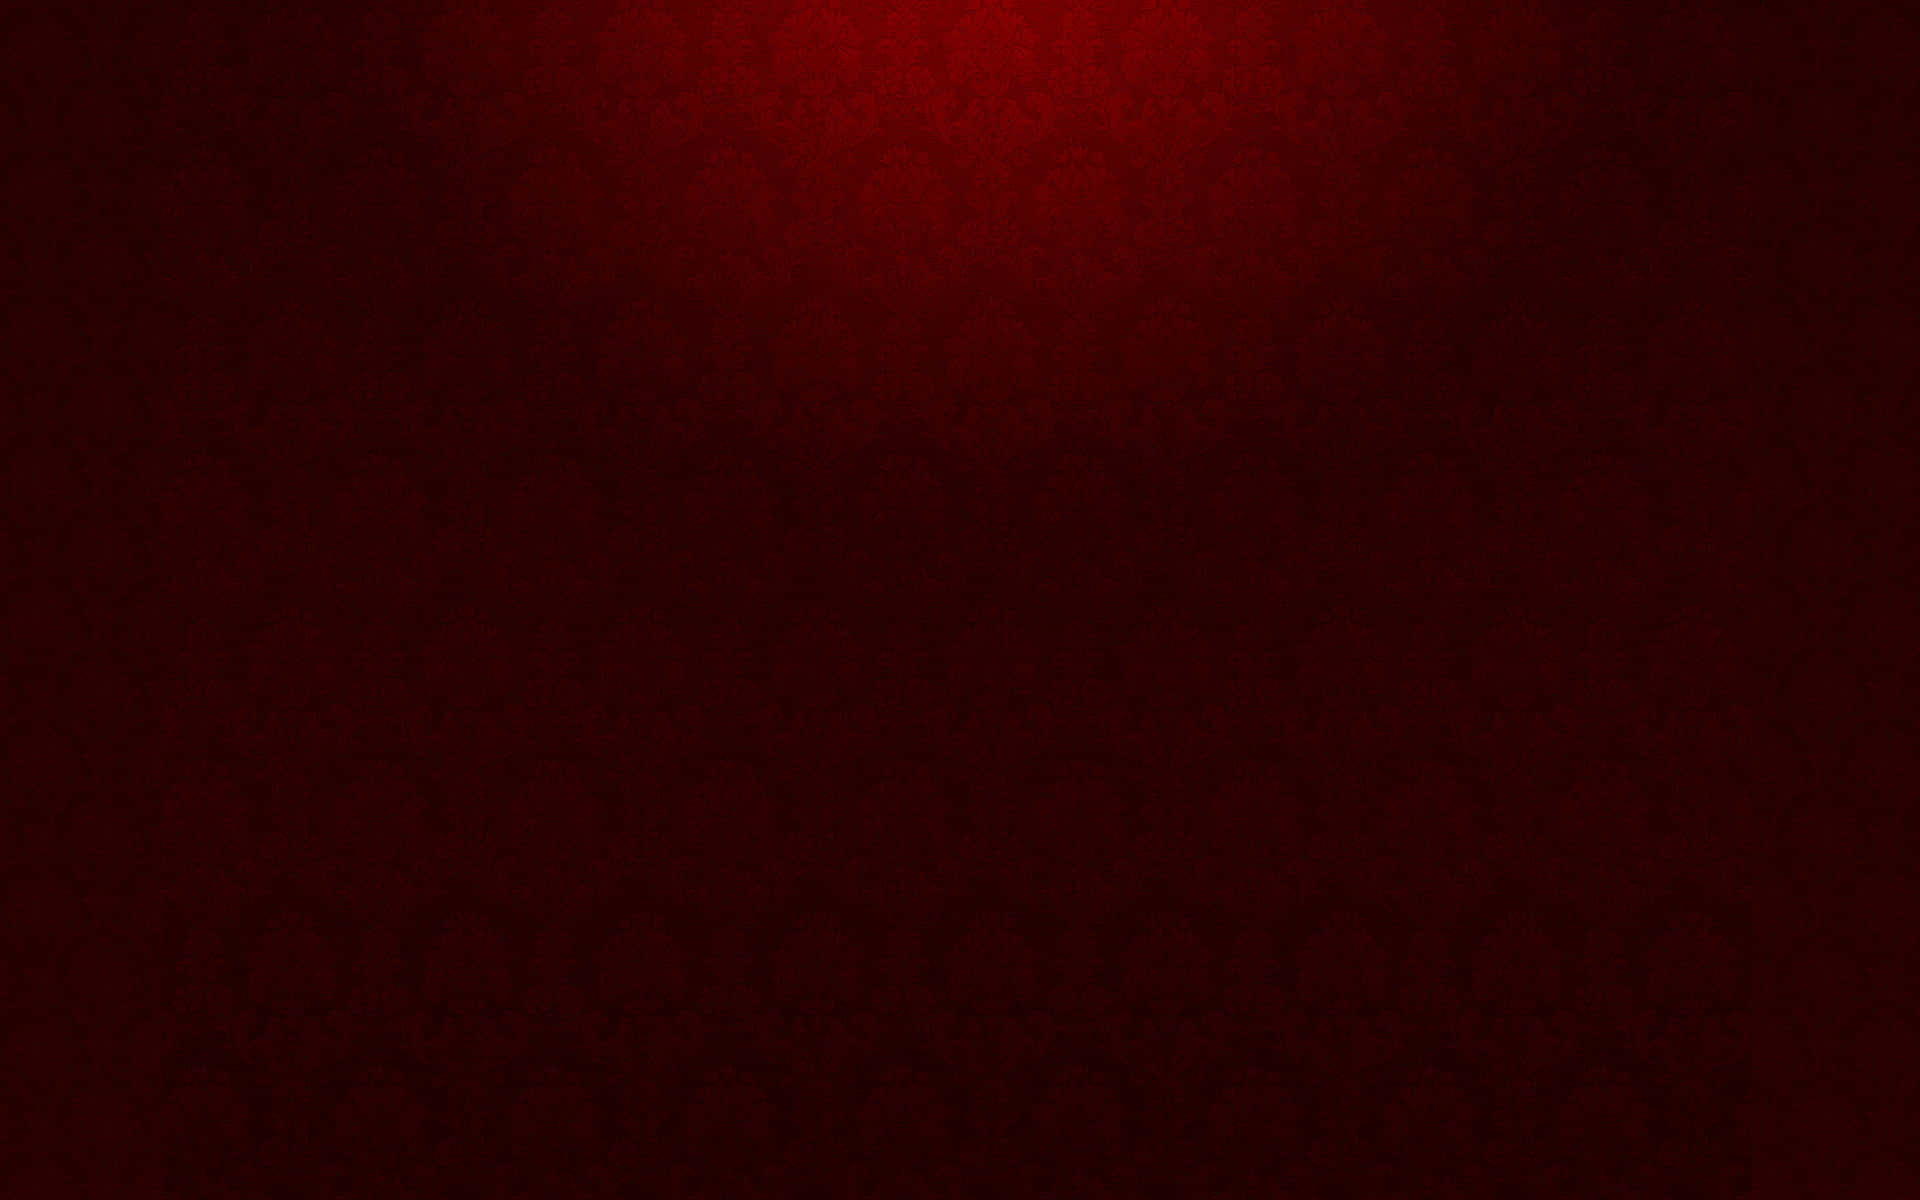 Dark Red Background Dark Red Texture With A Spotlight